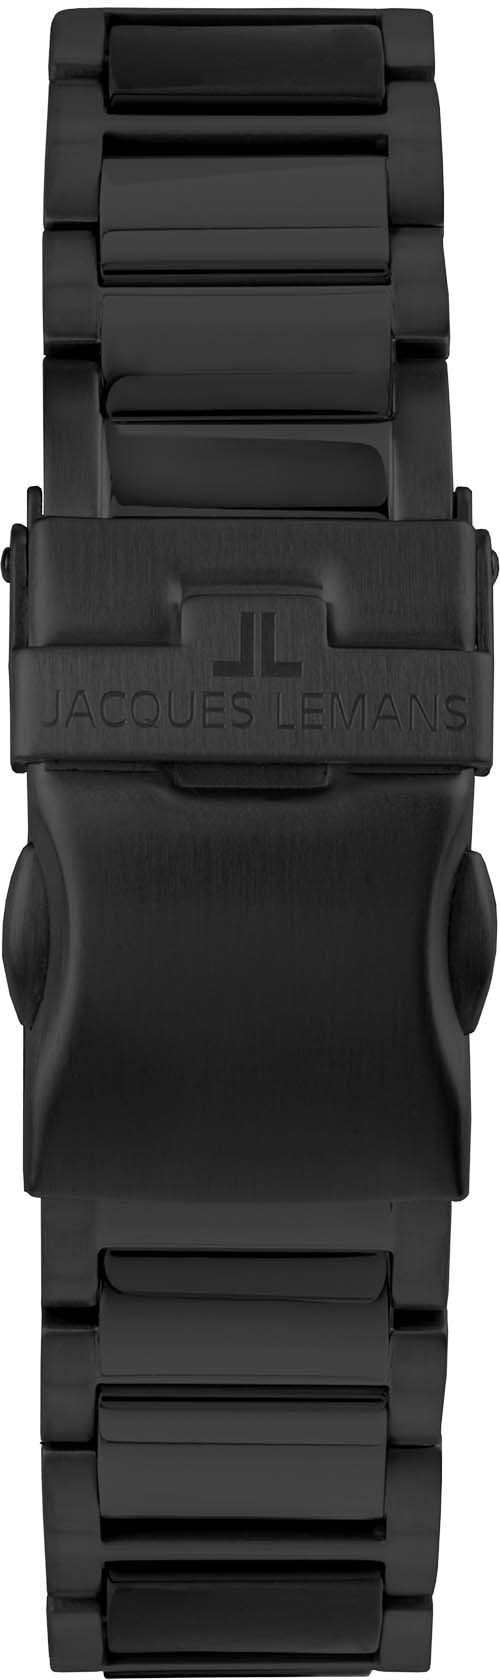 Jacques Lemans Keramikuhr »Liverpool, 42-12D«, Quarzuhr, Armbanduhr, Damenuhr, Datum, Leuchtzeiger